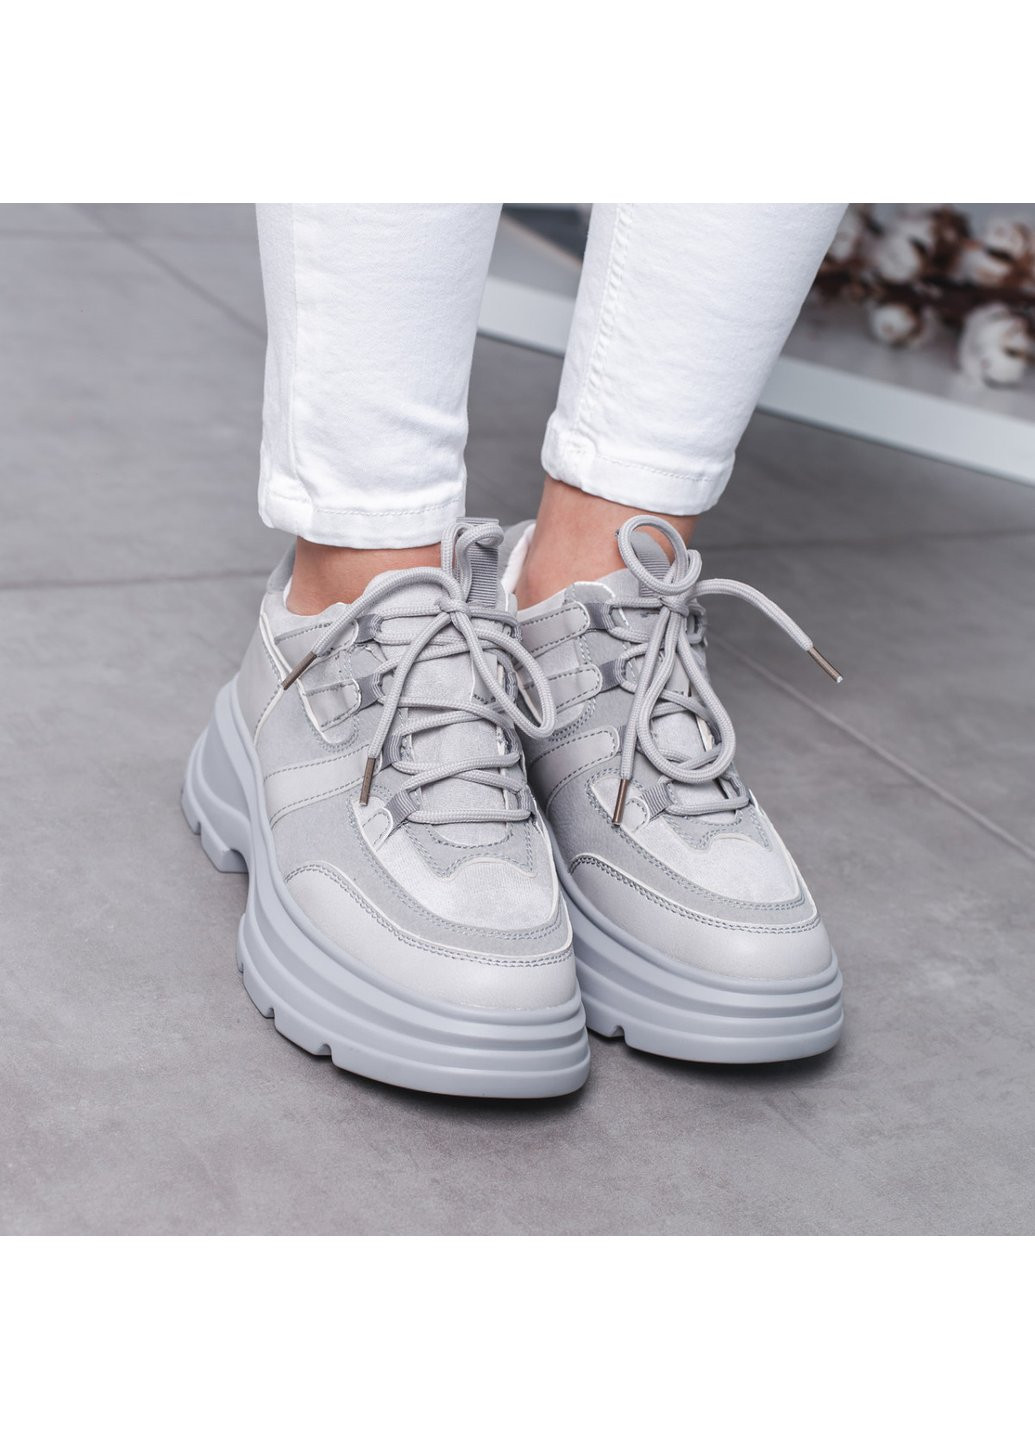 Серые демисезонные кроссовки женские ash 3525 40 25 см серый Fashion